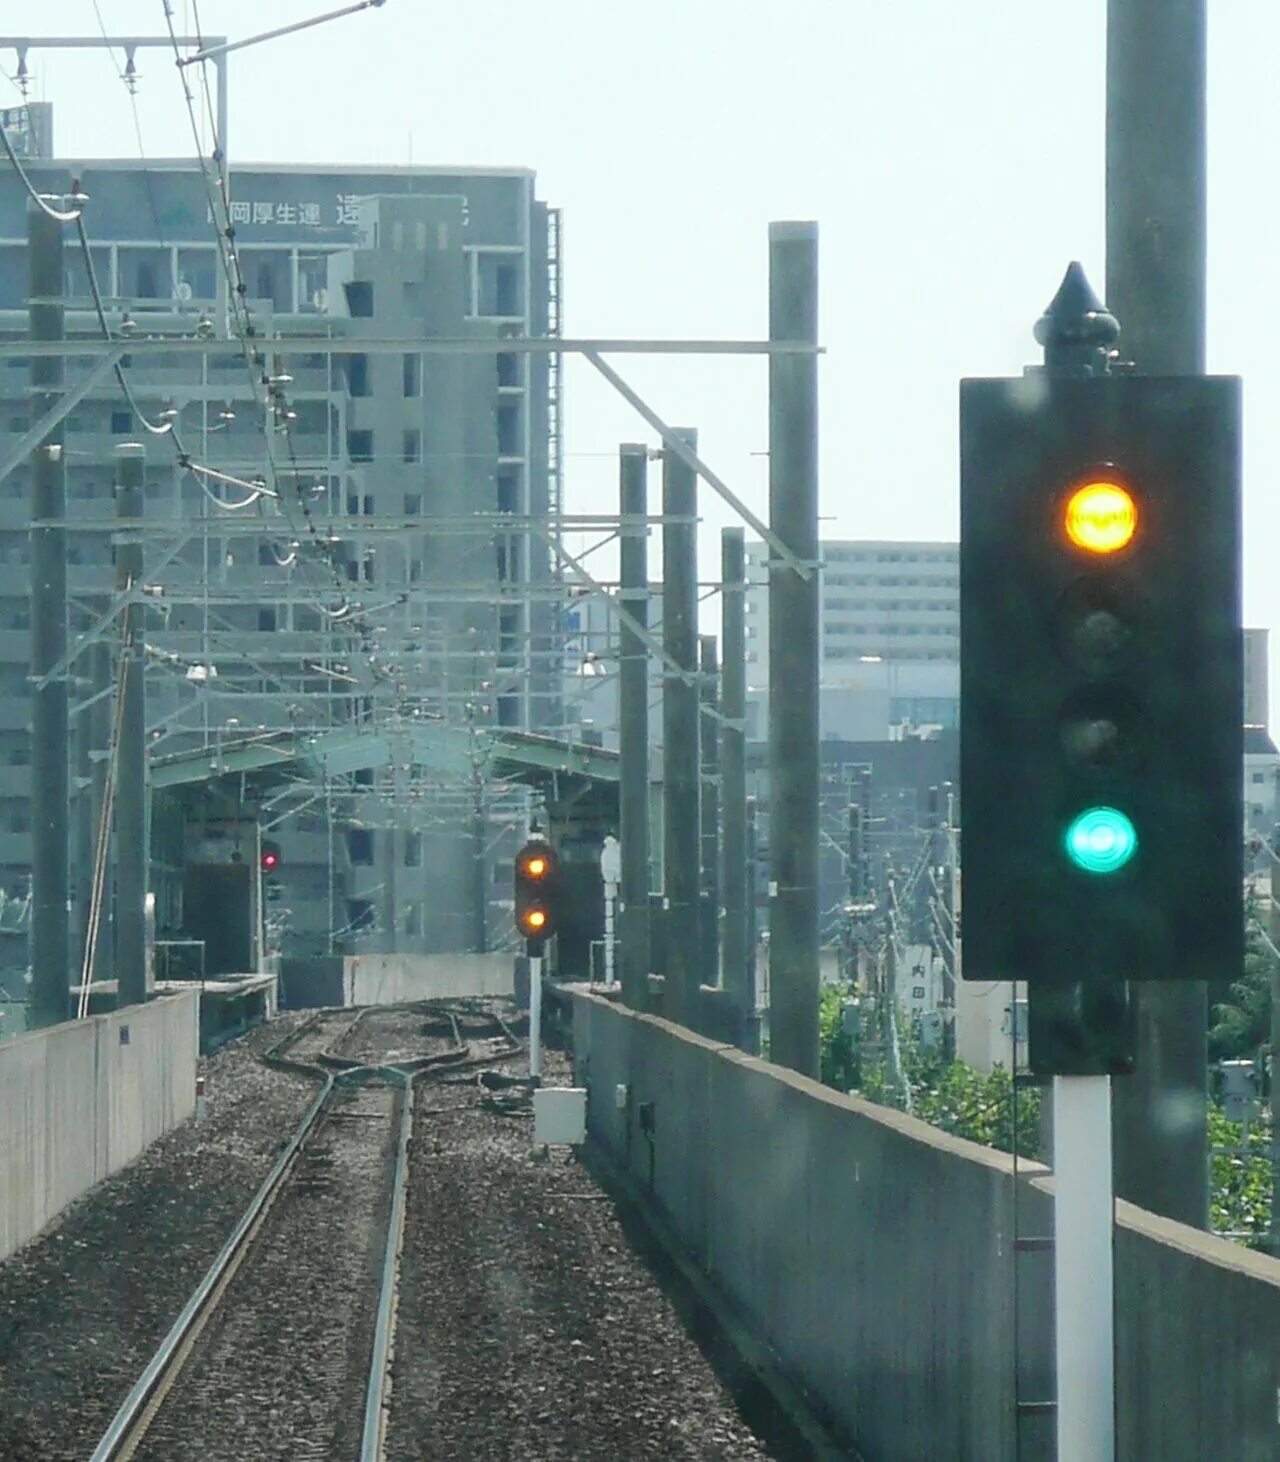 Сигнализация на железной дороге. Железнодорожная светофорная сигнализация. Норвежская Железнодорожная сигнализация. Железнодорожные светофоры в США. Сигнализация на ЖД.